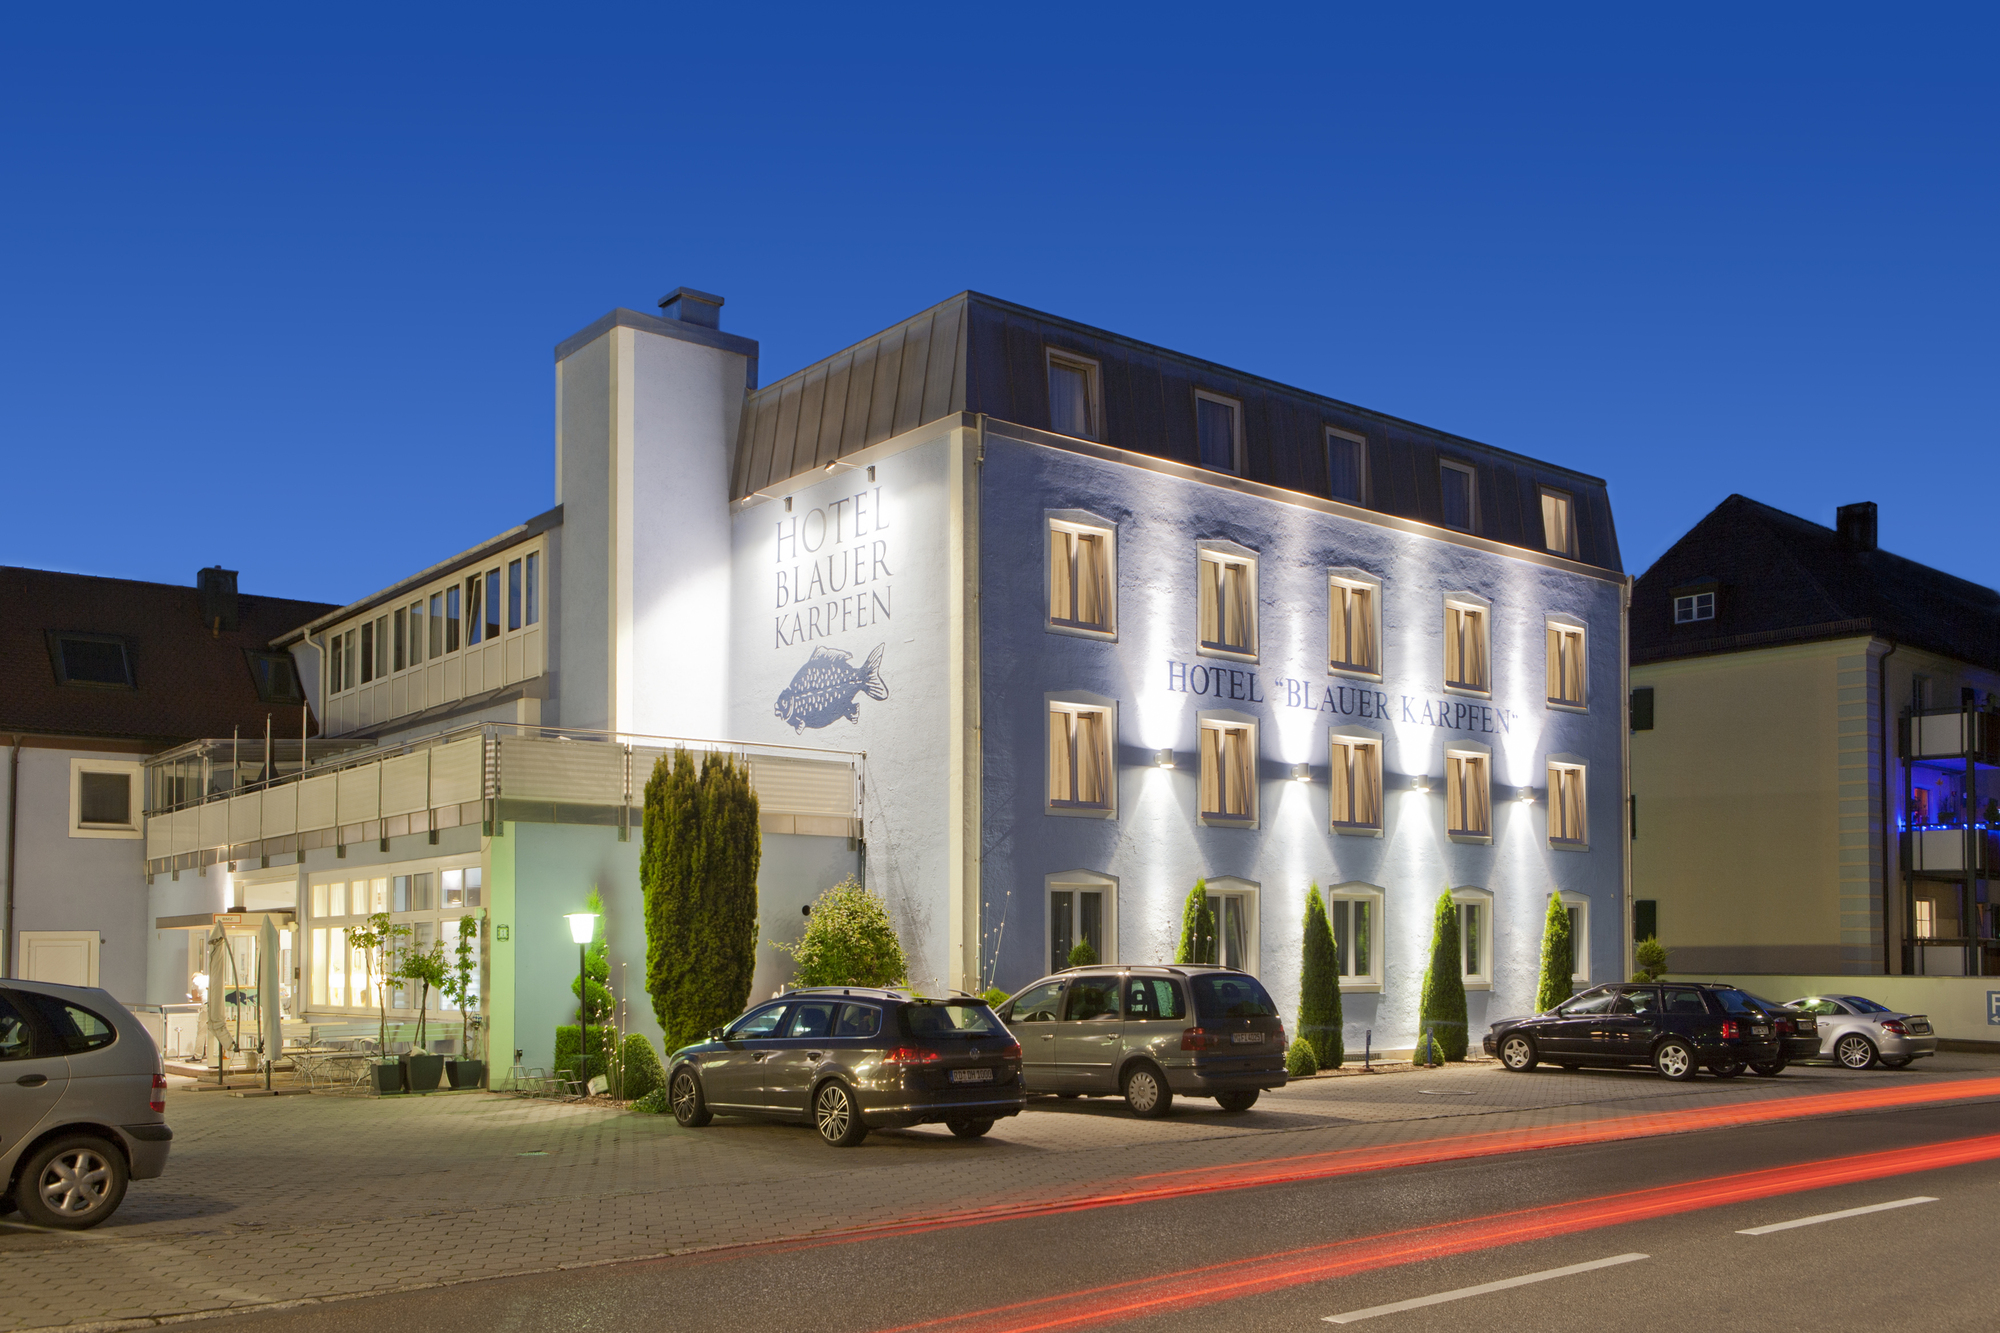 Meeting Hotel blauer Karpfen, Oberschleißheim bei München